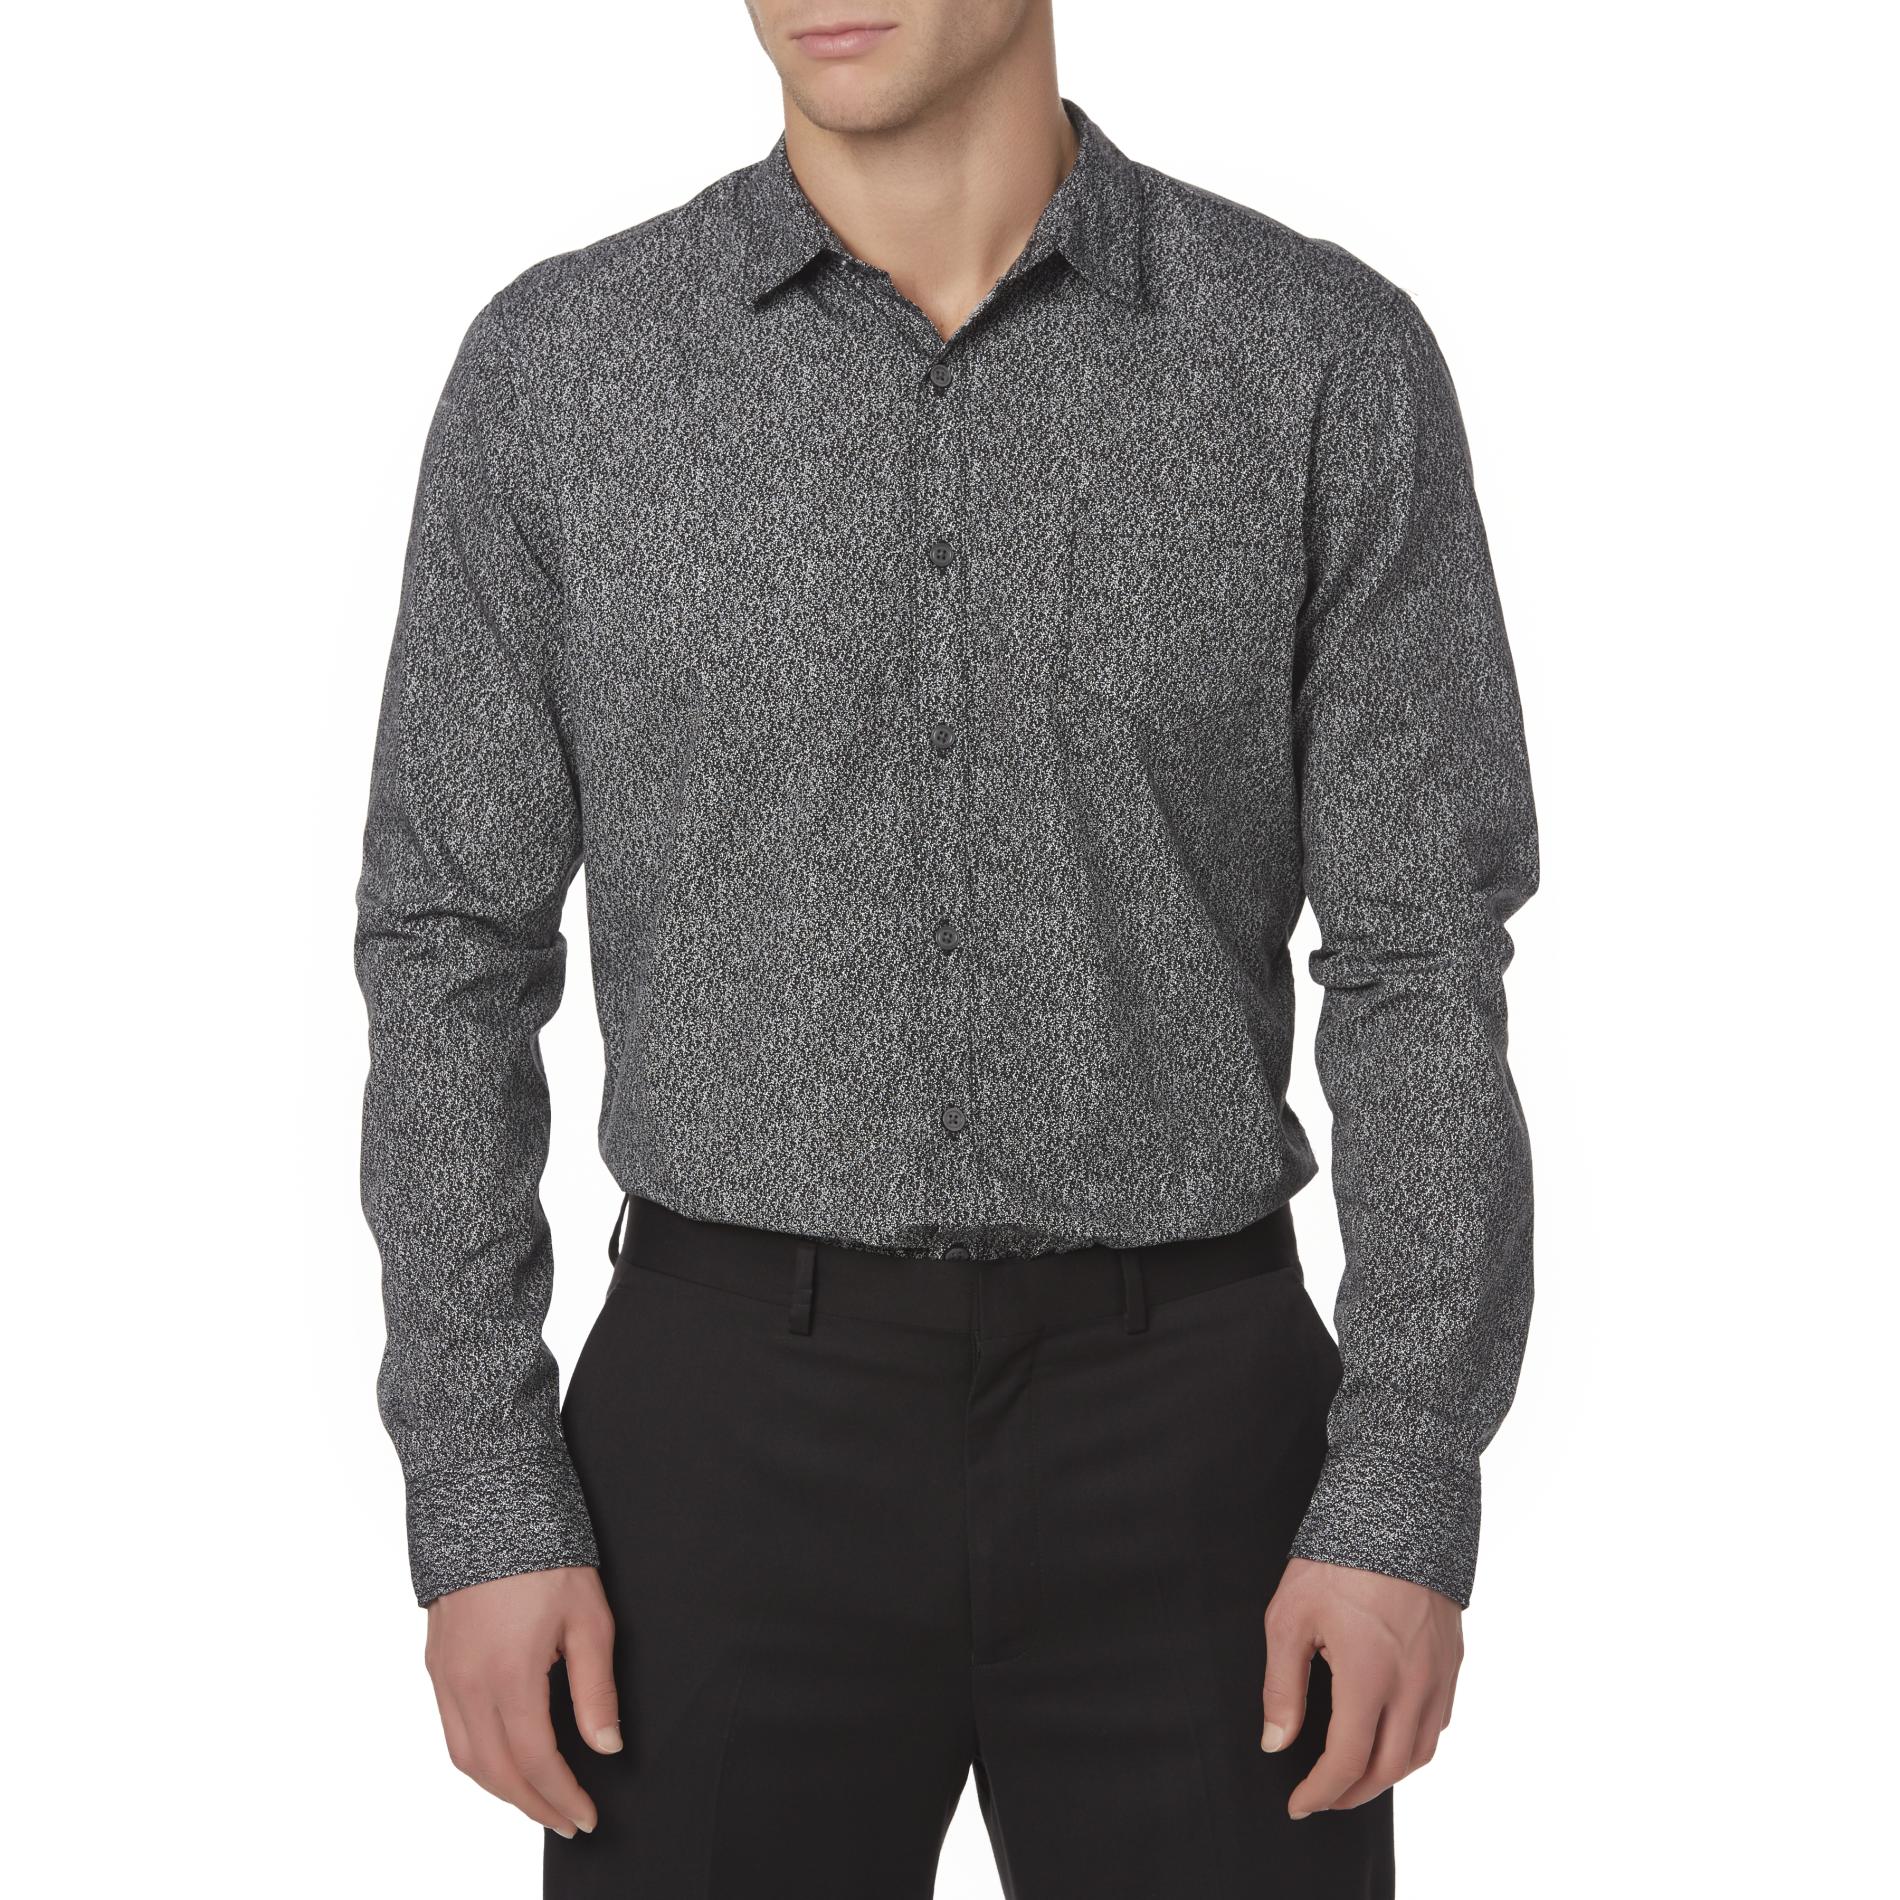 Structure Men's Slim Fit Shirt - Speckle